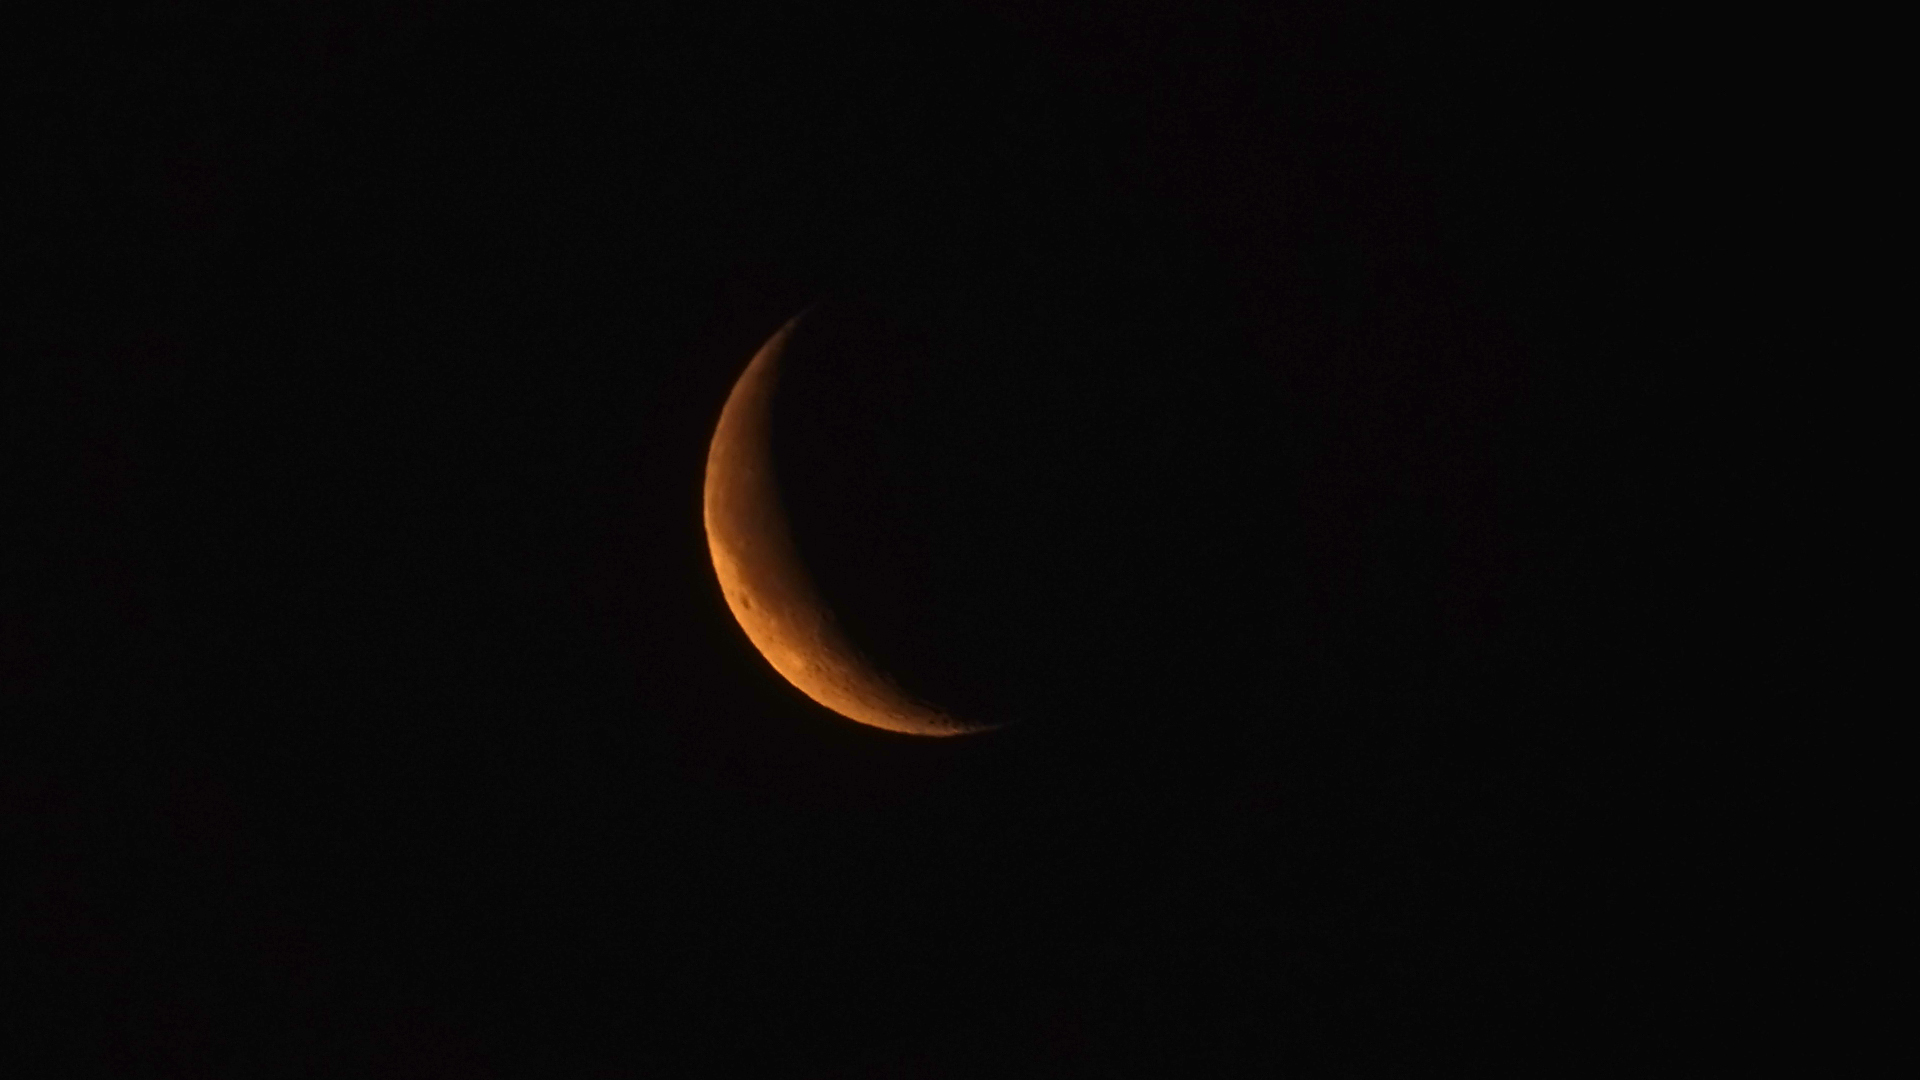 Fotostrecke Mond, Abbildung 24: Abnehmender Mond am 9. Jänner 2021 über Wien